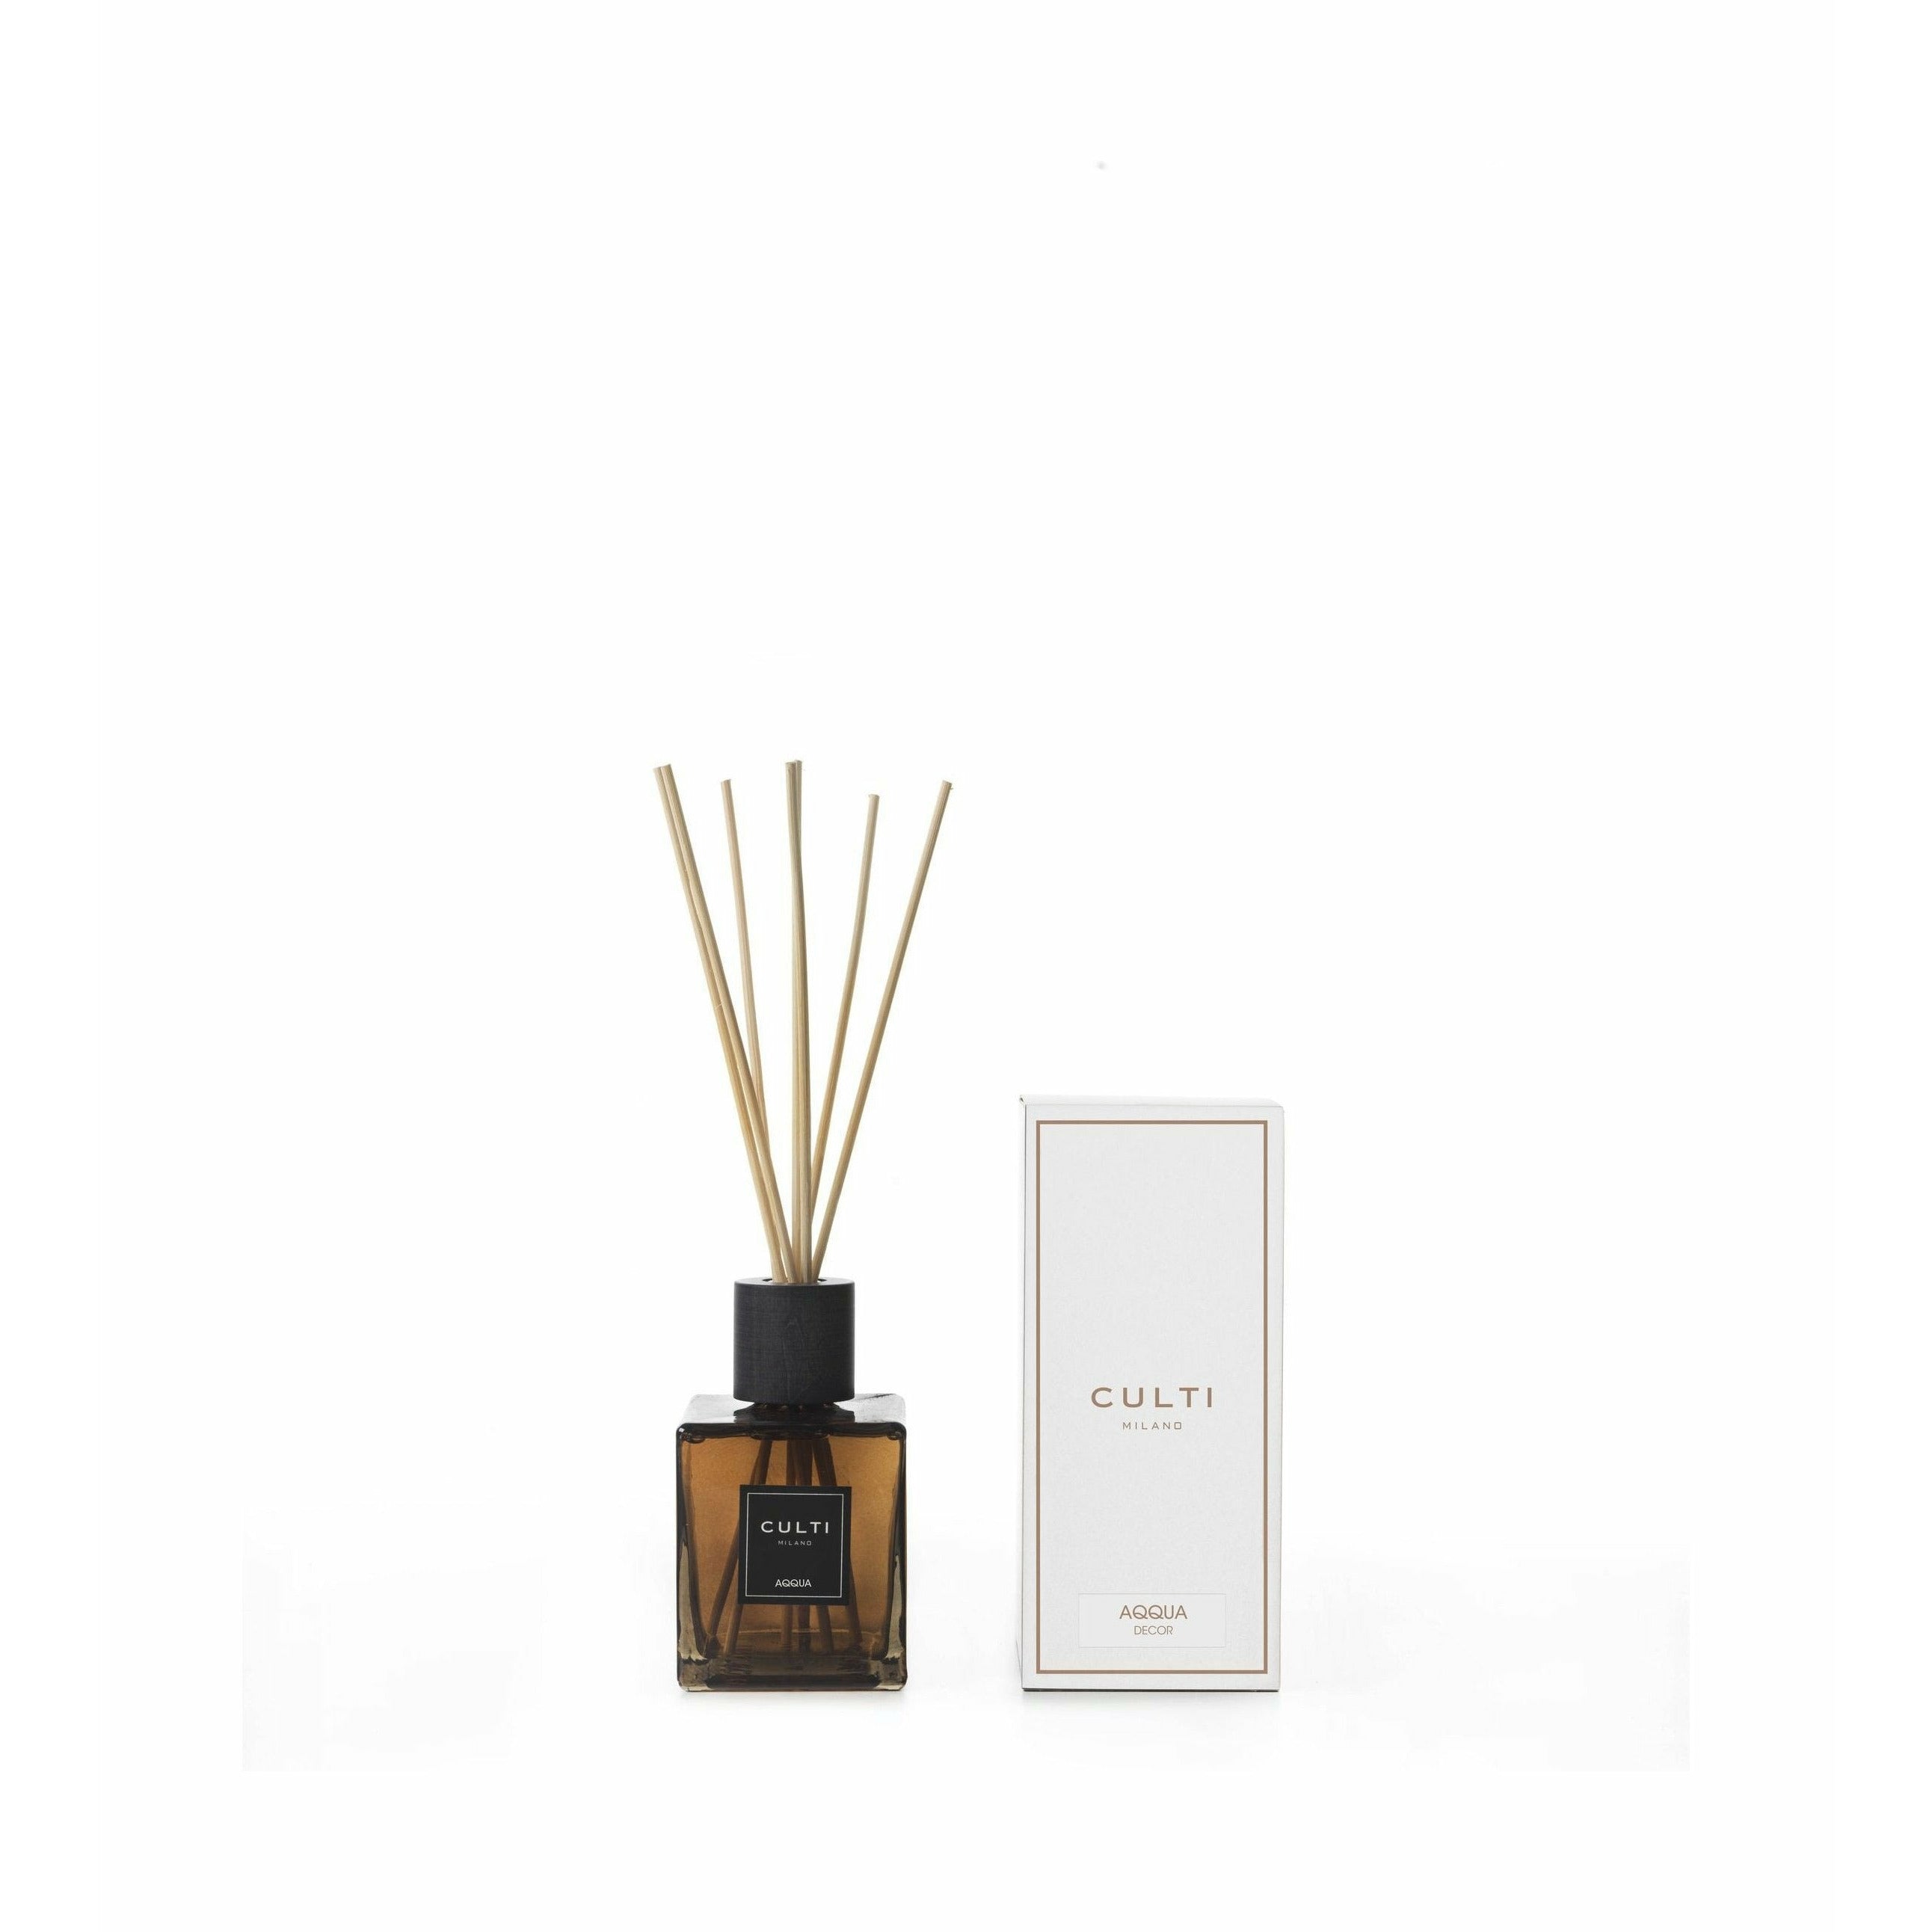 Culti Milano Decor Classic Fragrance Diffuser Aqqua, 500 Ml